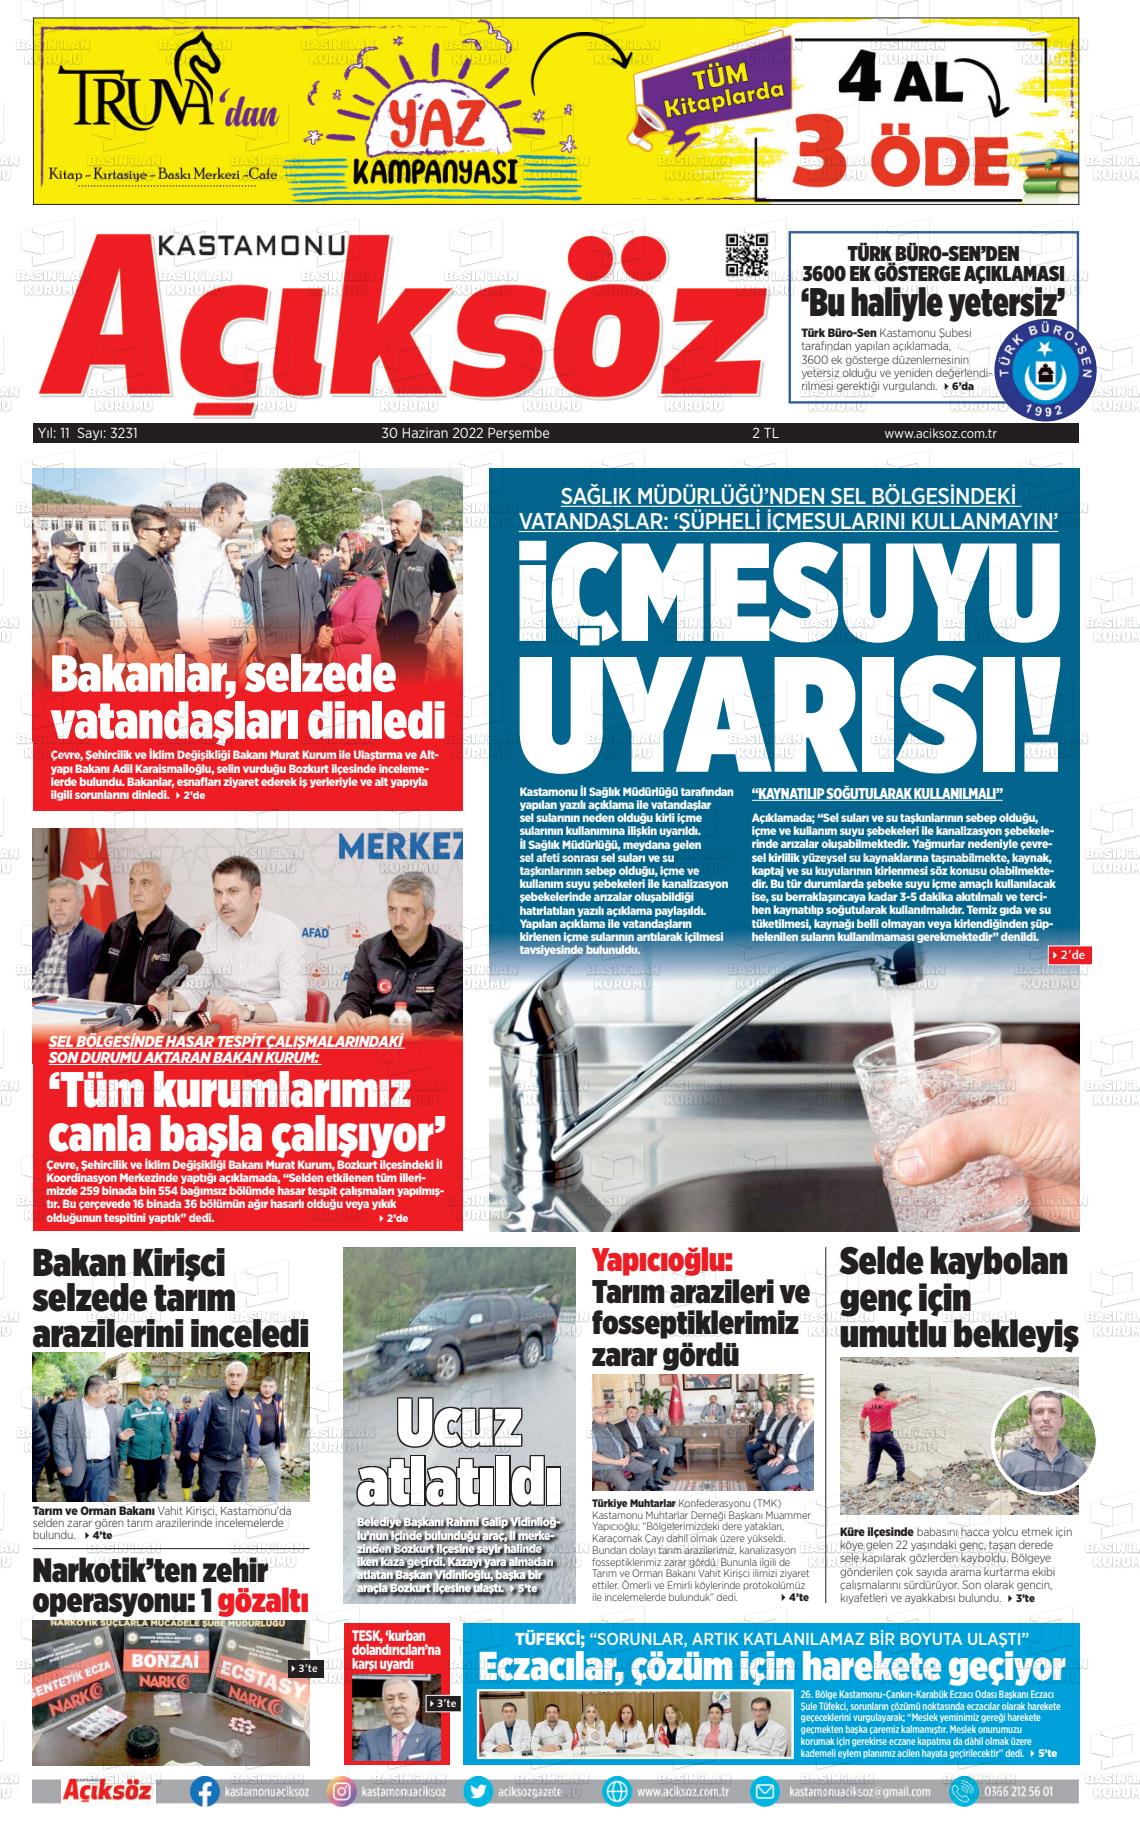 30 Haziran 2022 KASTAMONU AÇIKSÖZ GAZETESİ Gazete Manşeti